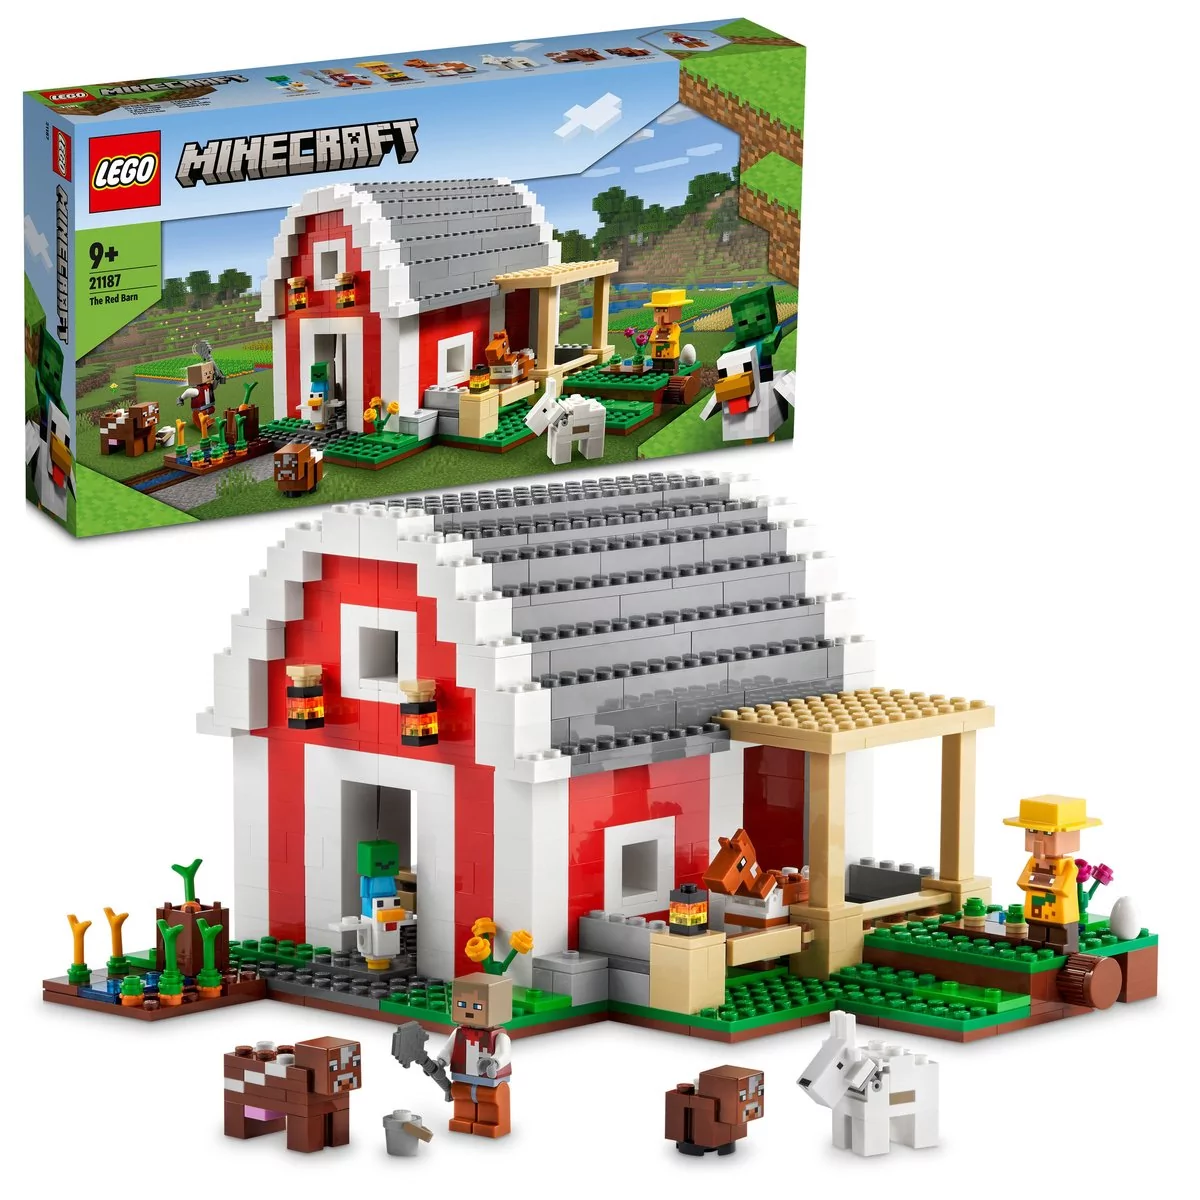 LEGO Minecraft Czerwona stodoła 21187